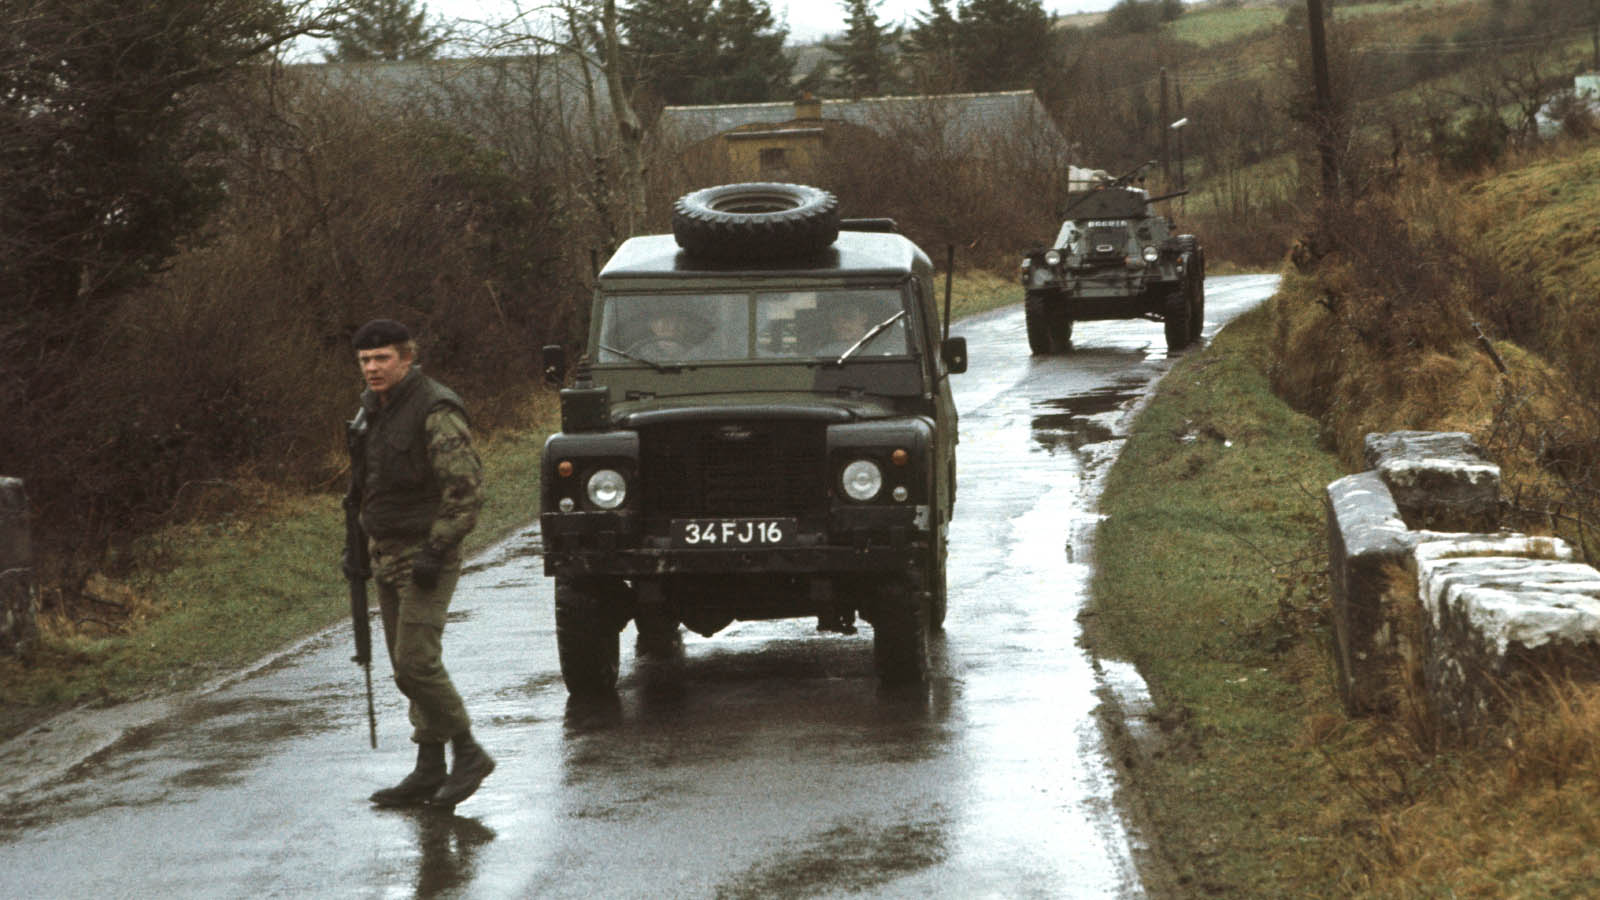 חייל בריטי מחפש מטענים בסמוך לכביש בקרבת הגבול עם הרפובליקה של אירלנד, כחלק מפטרול חמוש. ינואר 1978 (Photo by Alex Bowie/Getty Images)